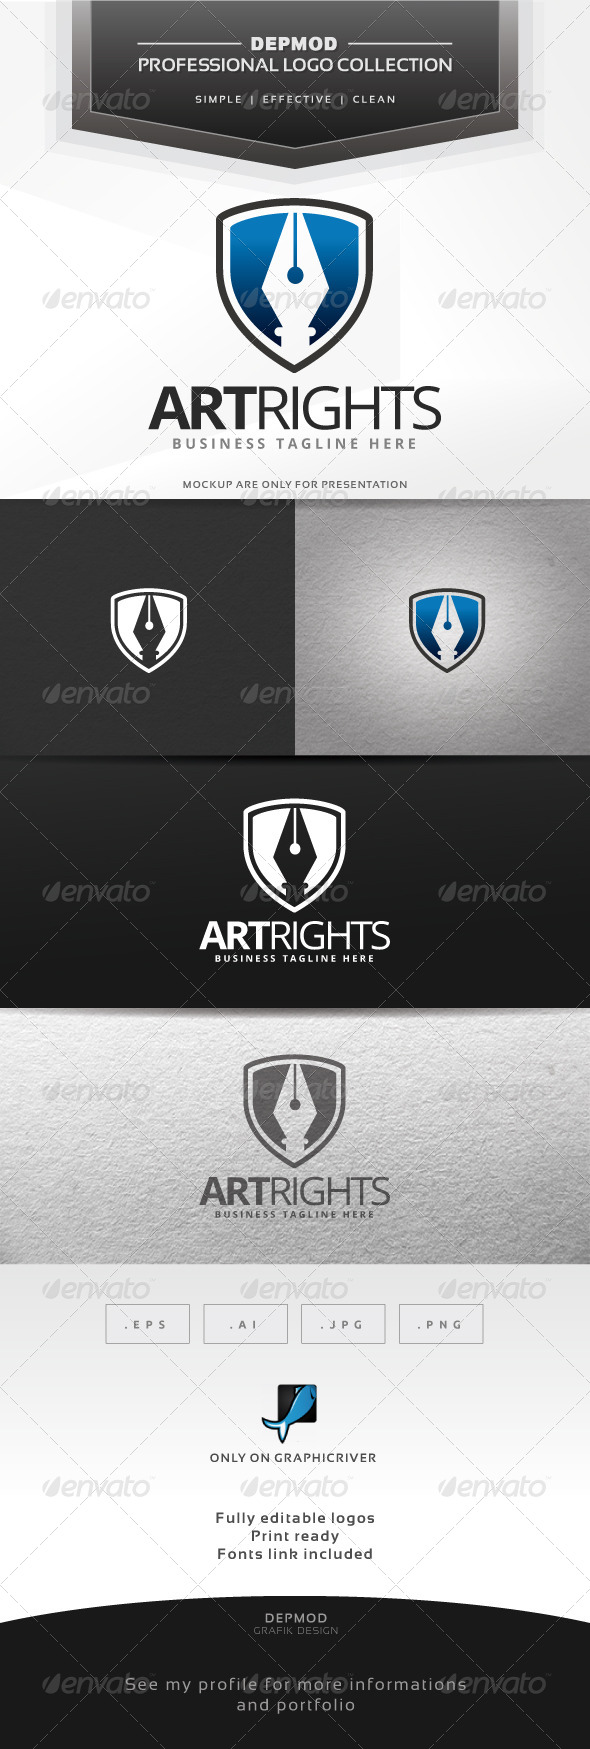 Art Rights Logo